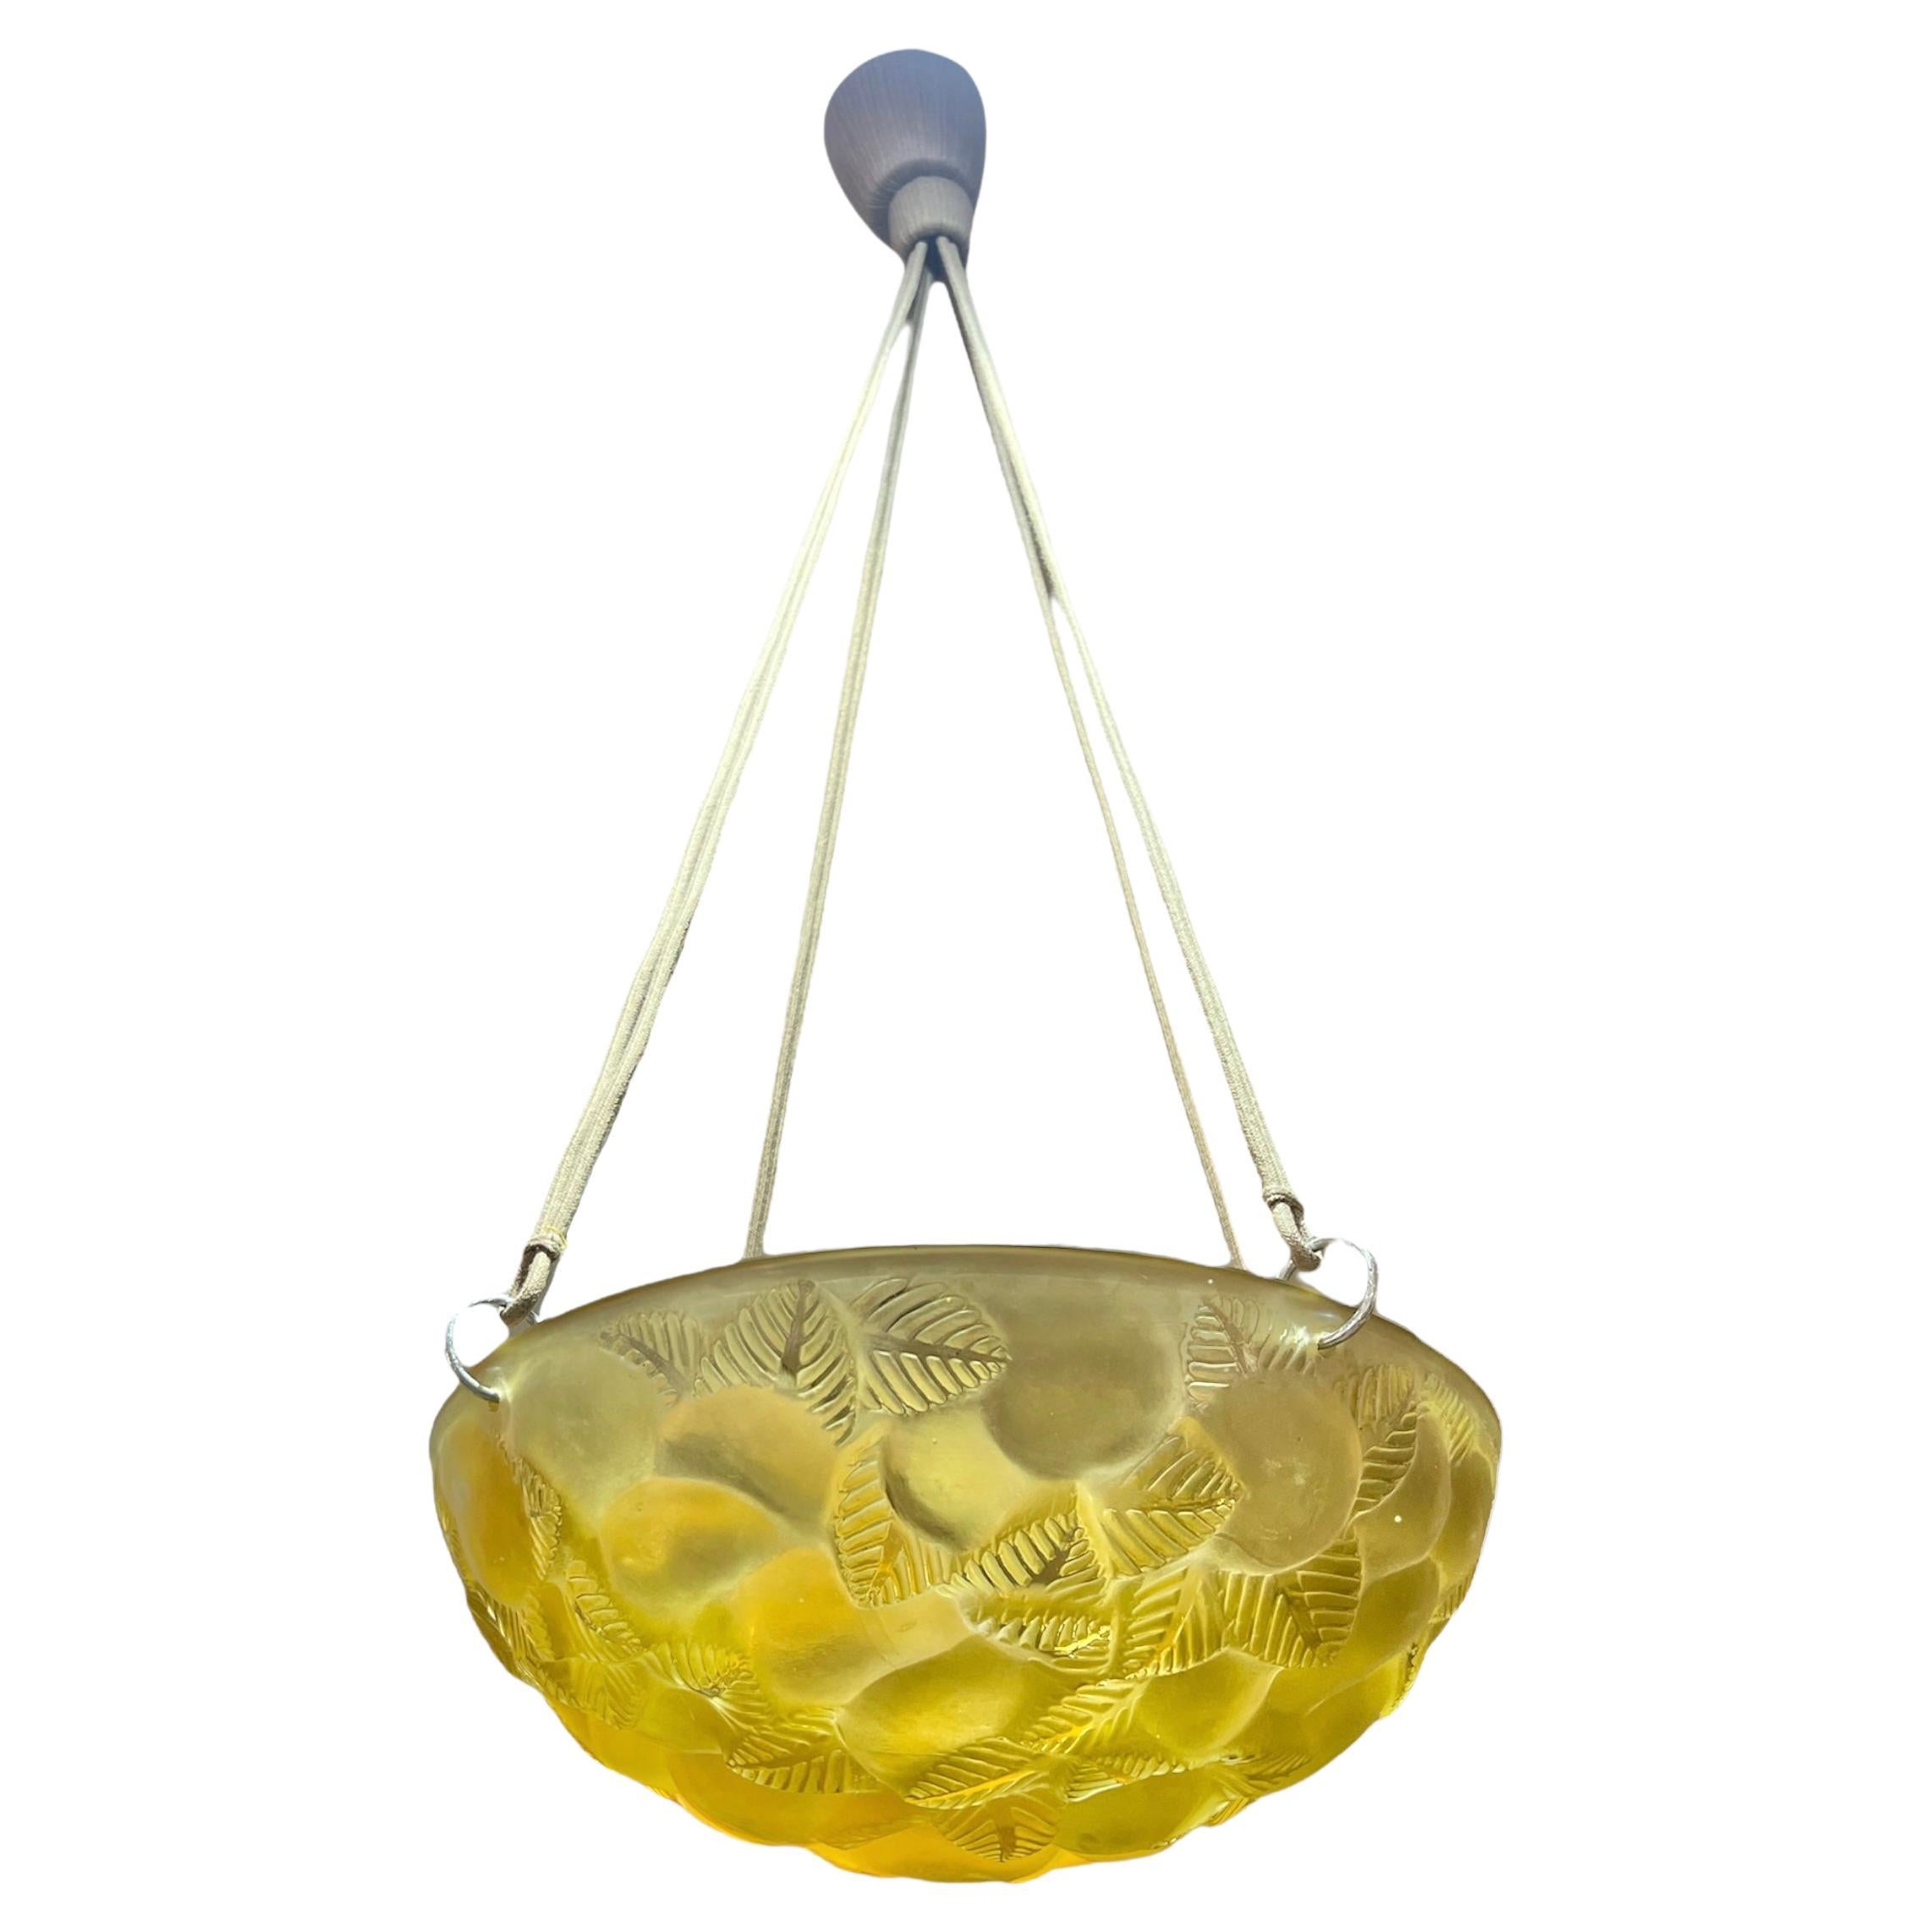 1929 René Lalique - Ceiling Fixture Light Chandelier Lausanne Yellow Amber Glass For Sale